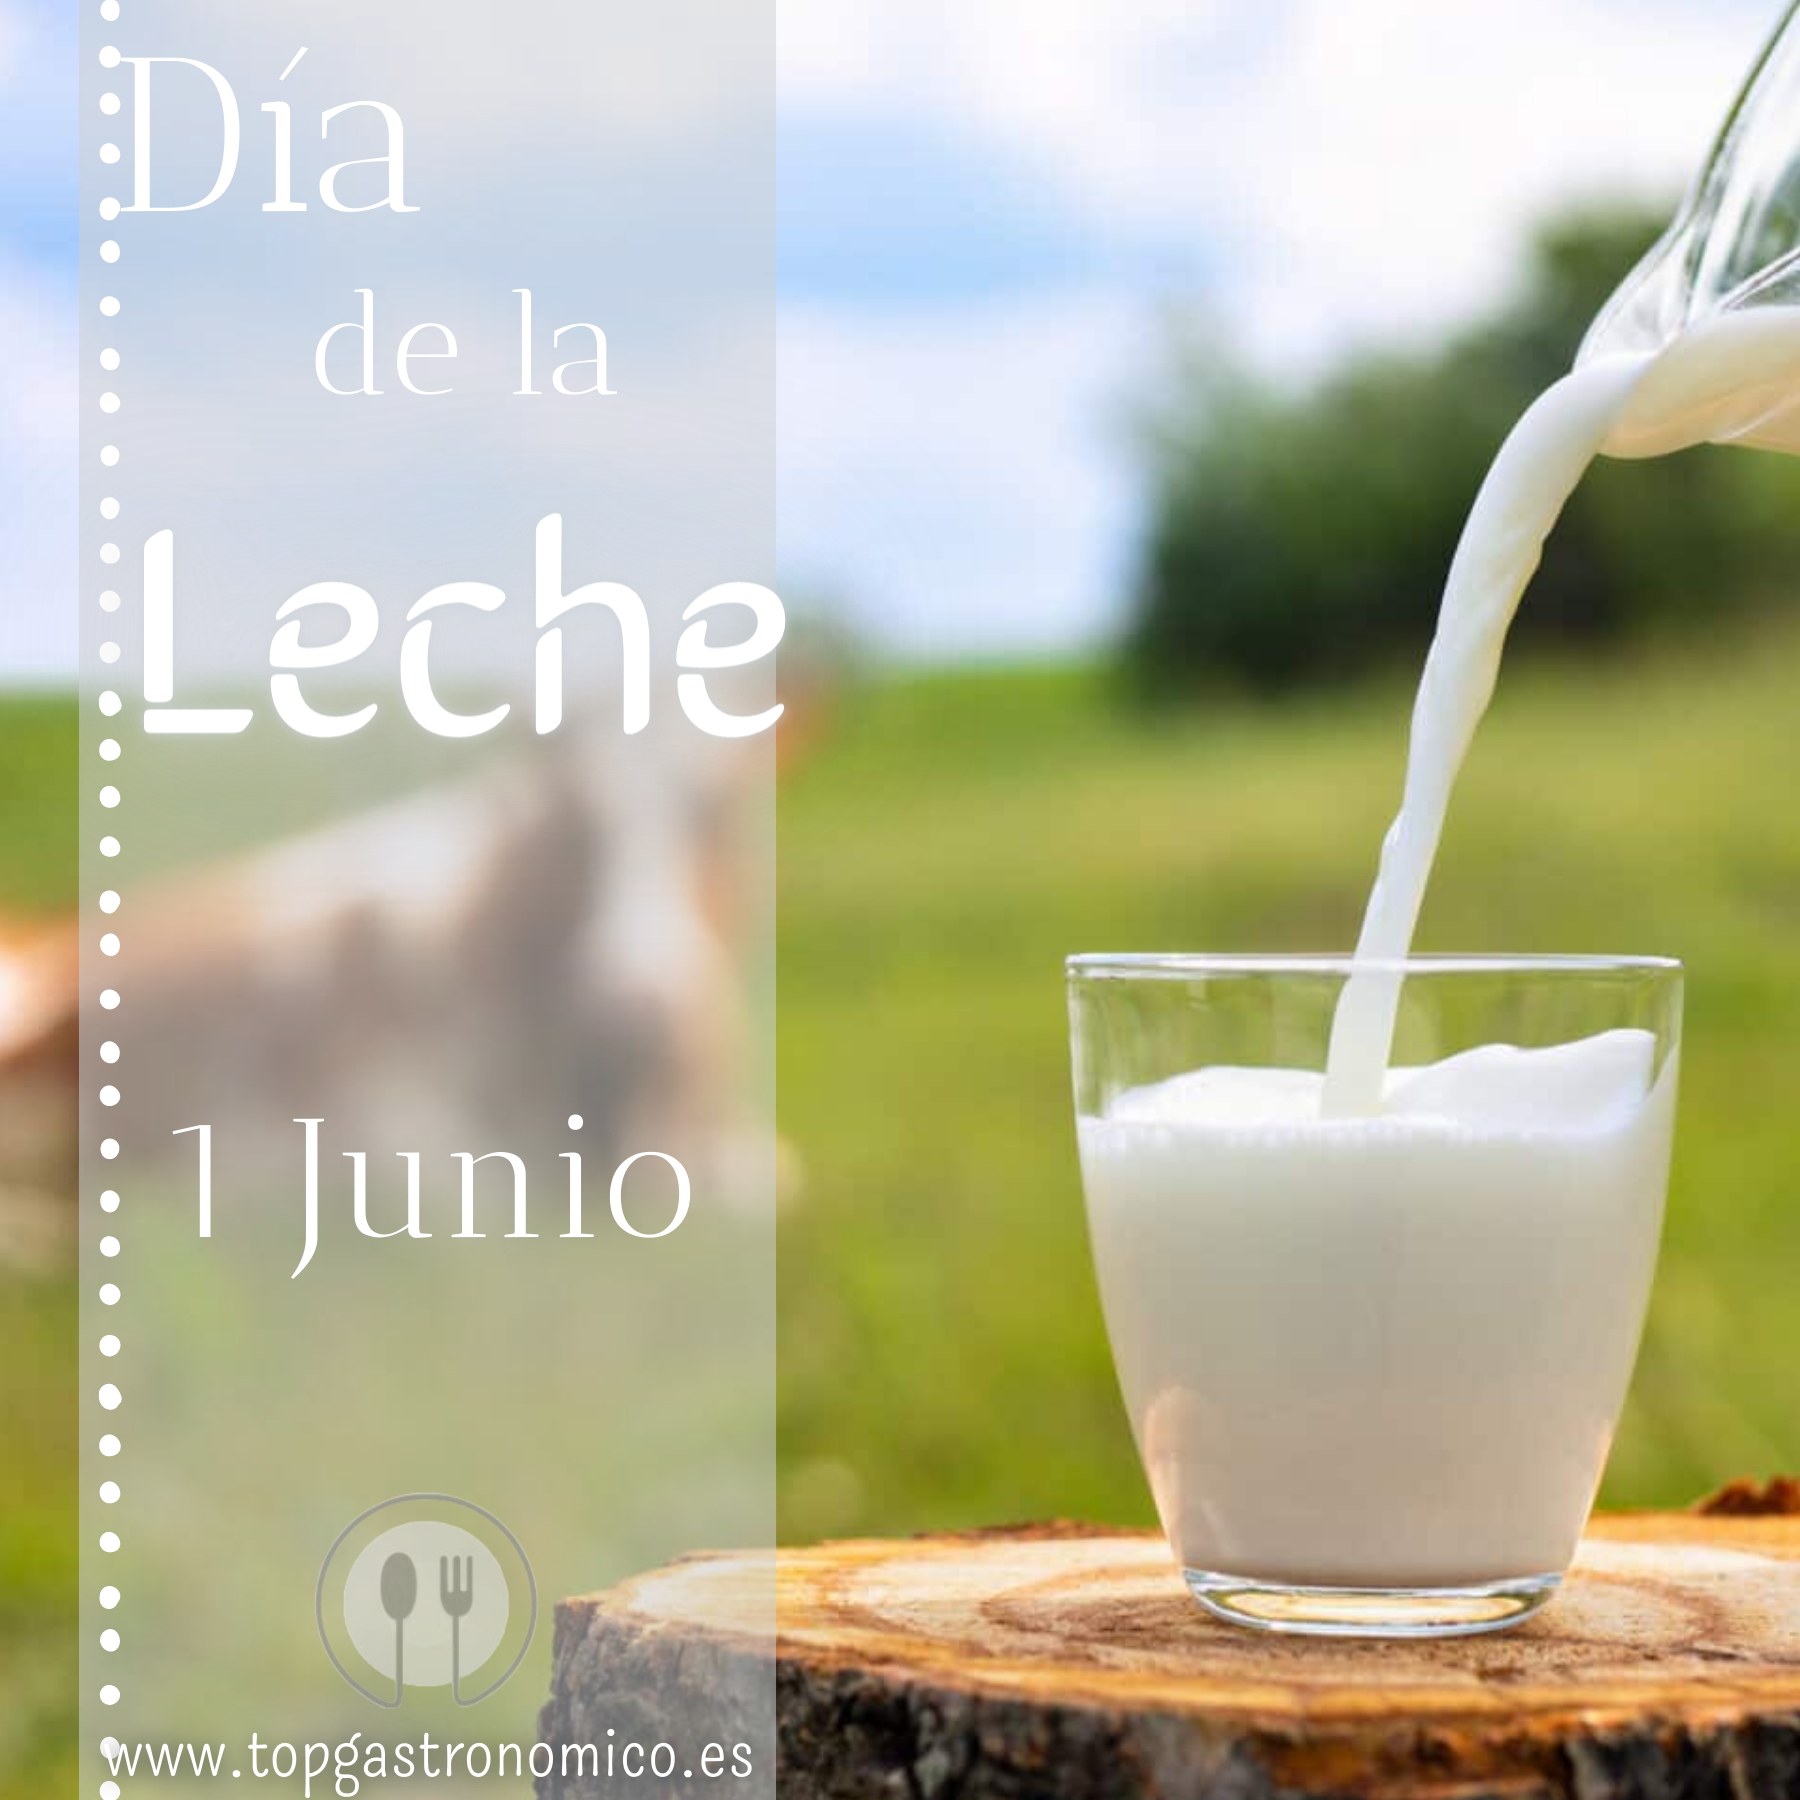 Celebra, cada 1 de Junio, el Día Mundial de la leche, un alimento básico en nuestra dieta